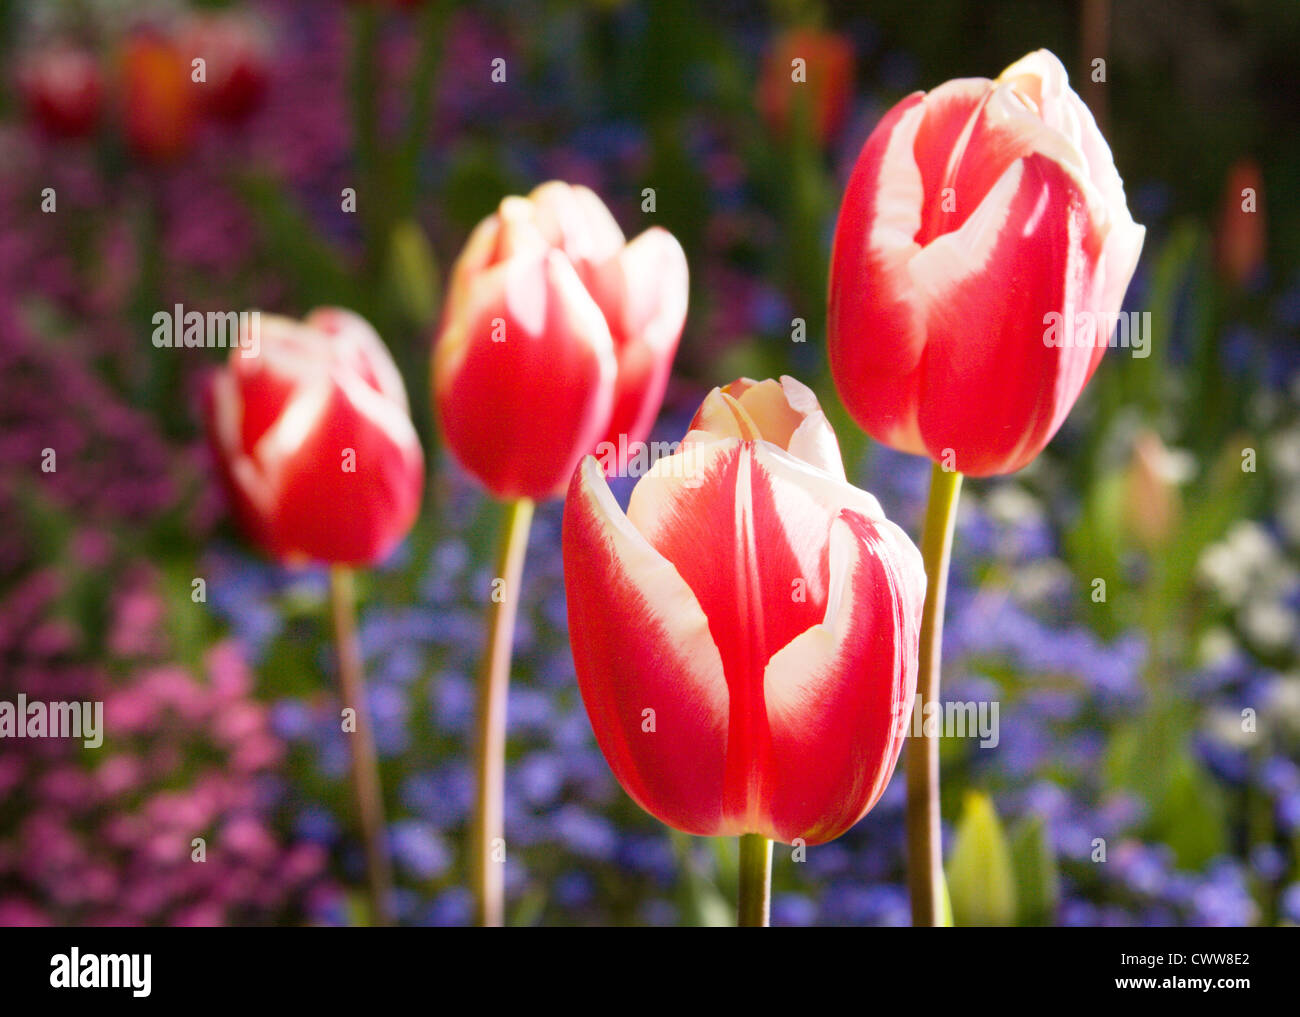 Schöne bunte rote und weiße Tulpen in Nahaufnahme, mit blauen Blüten im Hintergrund Stockfoto